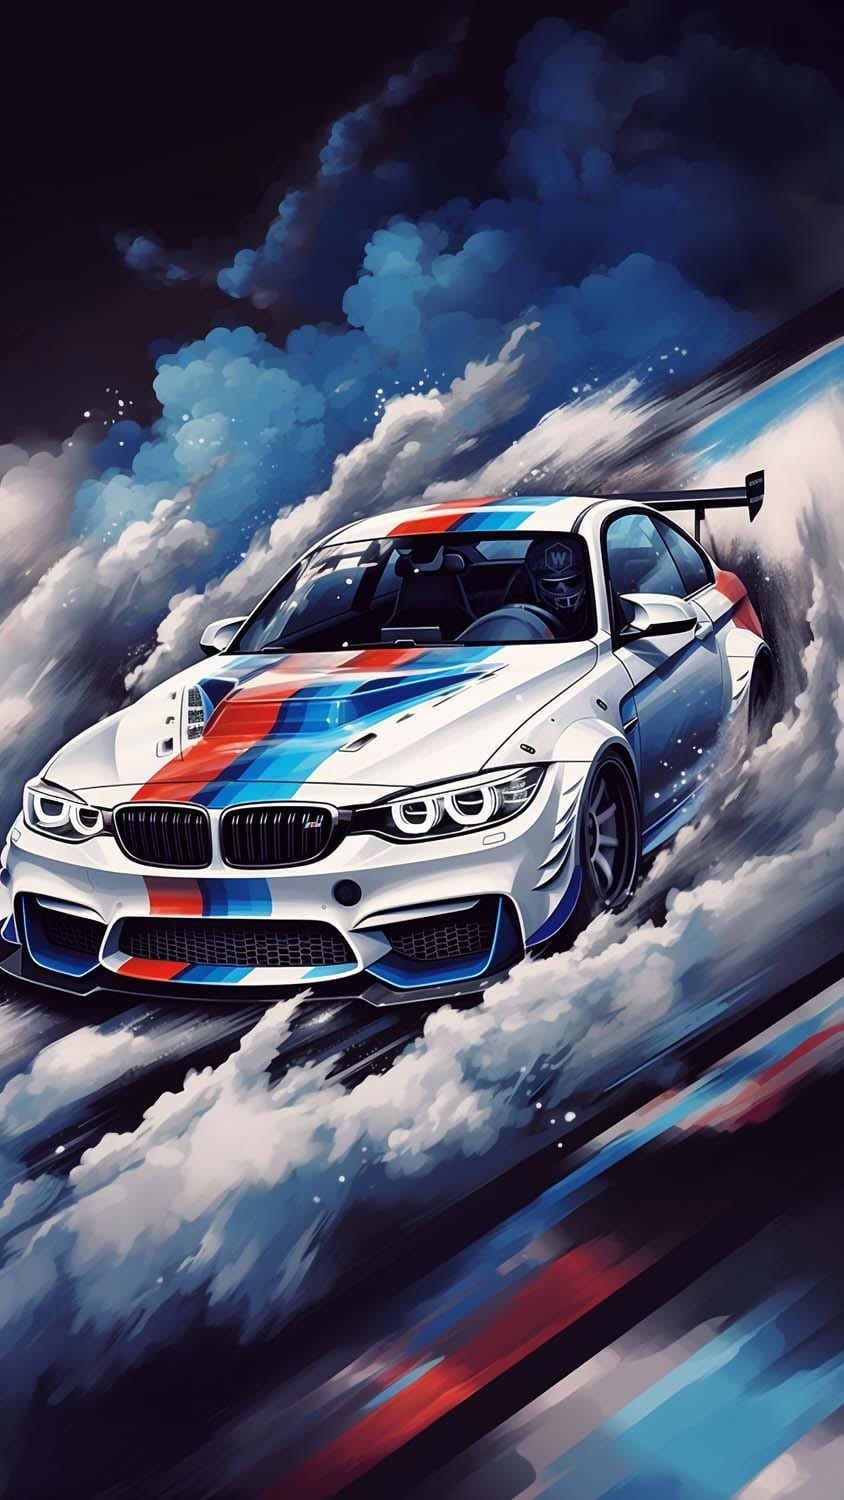 BMW Racing iPhone Wallpaper 4K  iPhone Wallpapers